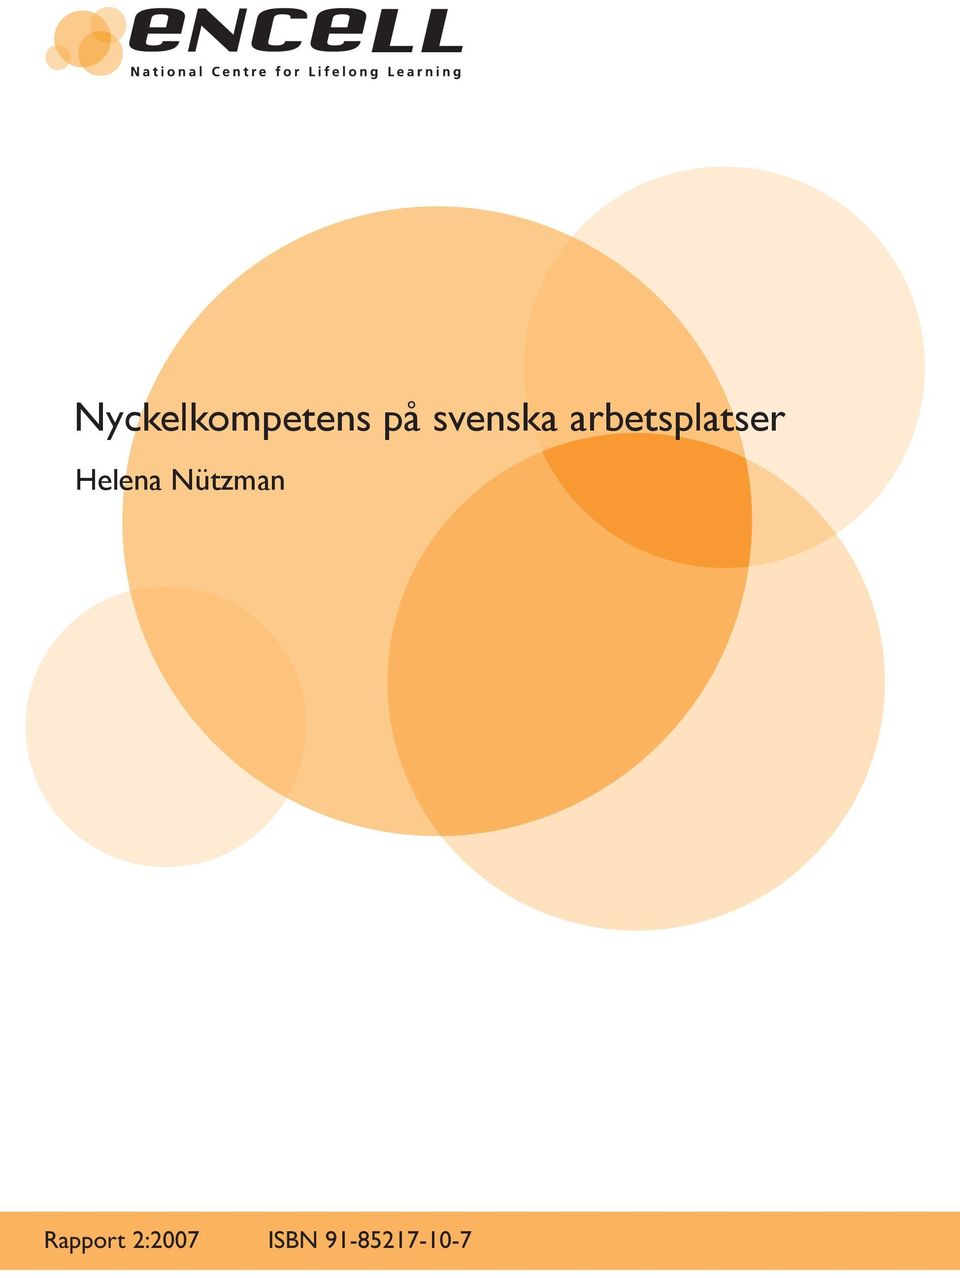 Helena Nützman Rapport